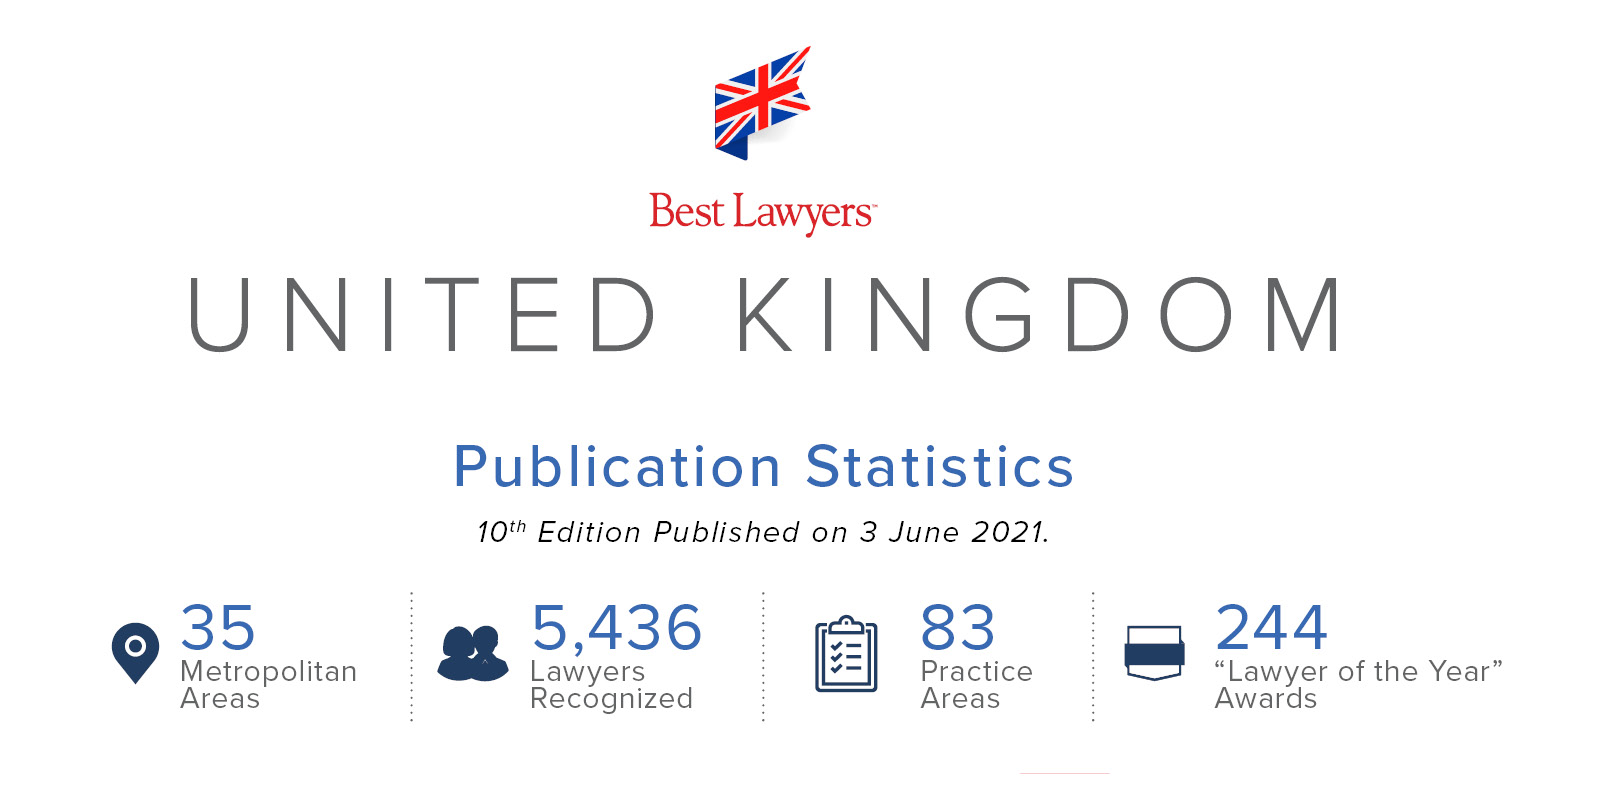 United Kingdom 10th Edition Publication Statistics 